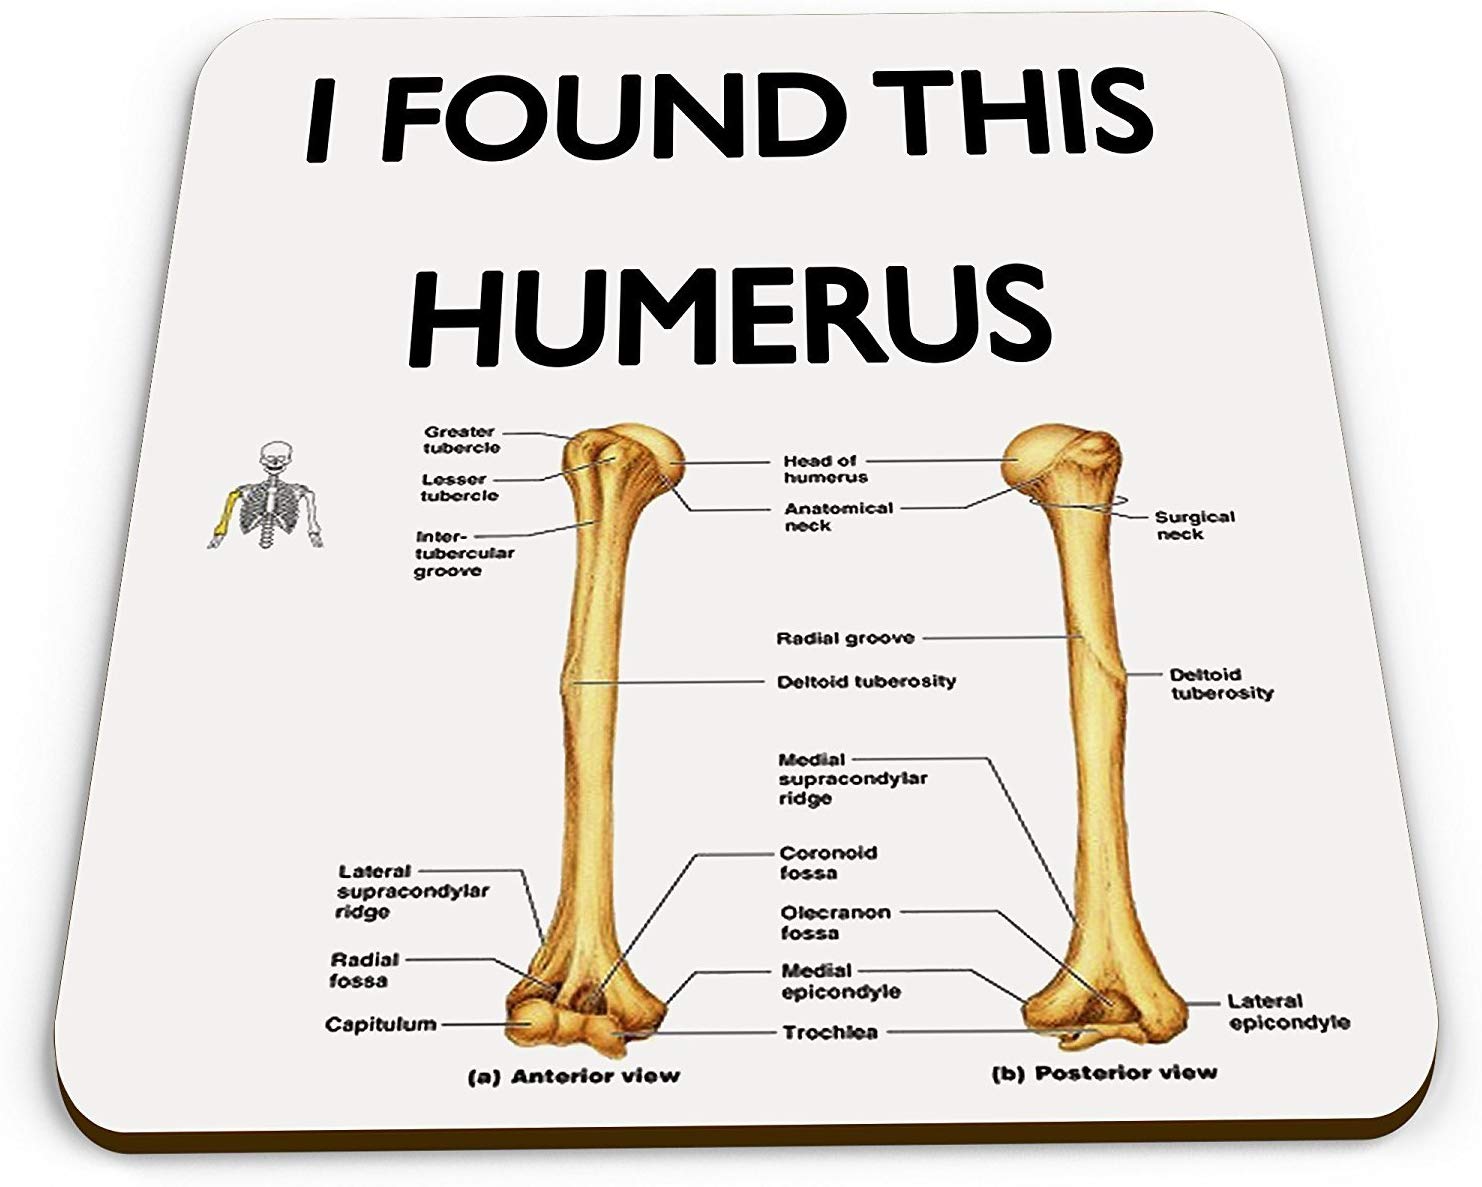 Humerus Funny Novelty Gift Mug Coaster